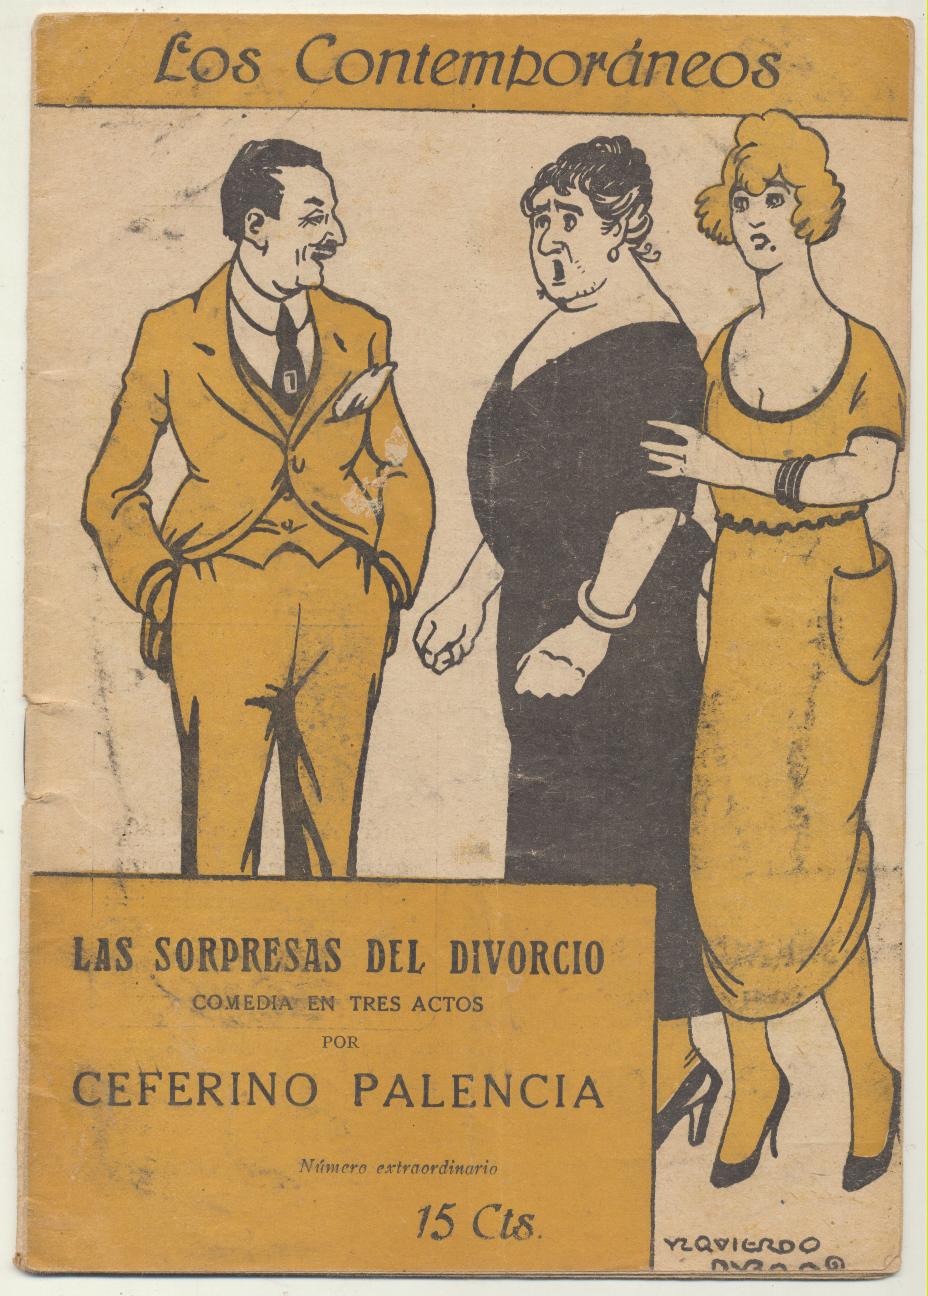 Los Contemporáneos nº 618. Las sorpresas del divorcio por Ceferino Palencia. Año 1920